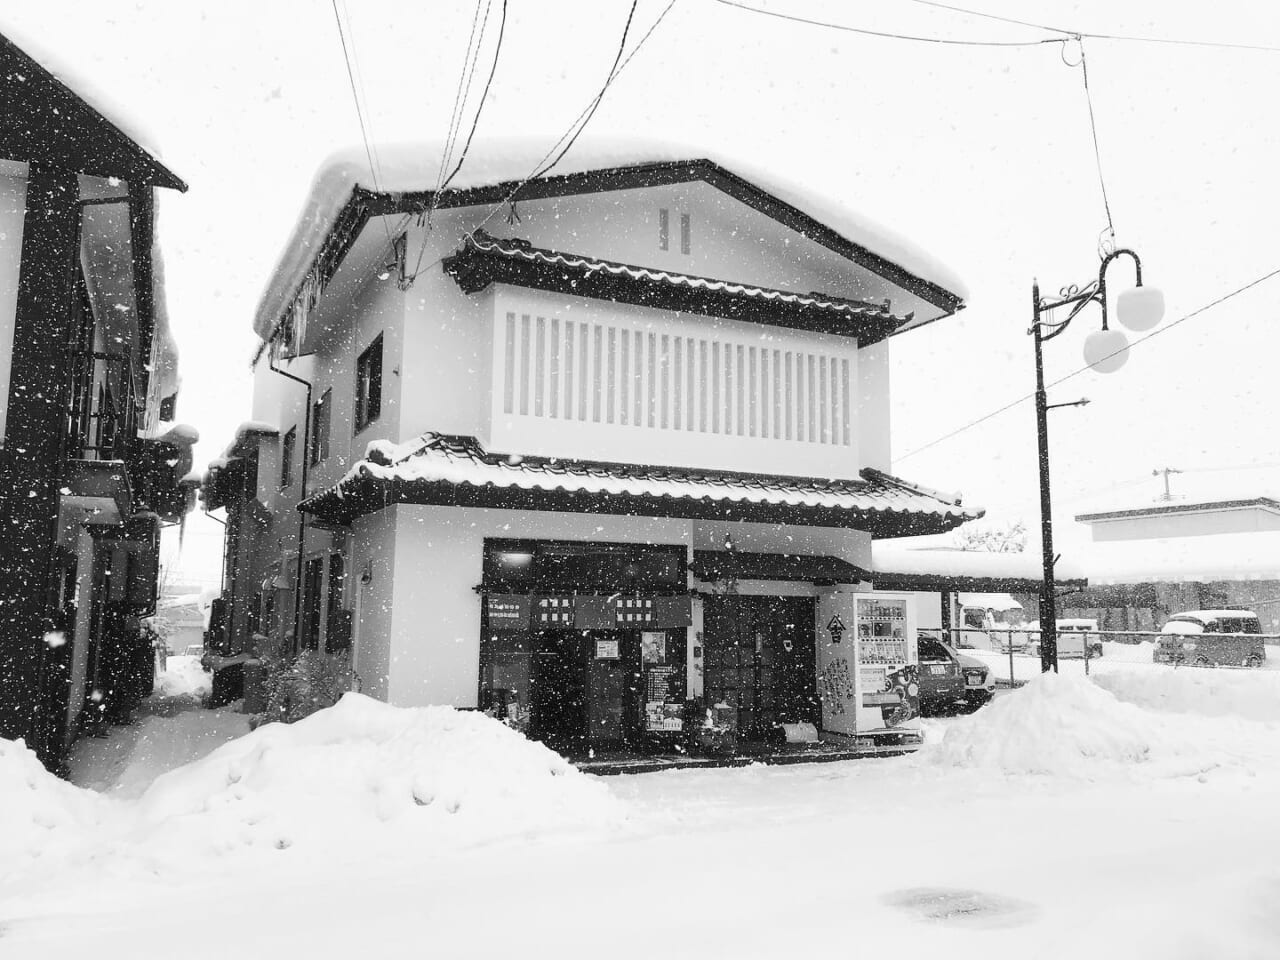 今日も雪️
東京や関東地方でも雪ですね️
皆さま、足元に注意しながら
無理なさらずゆったりとした一日を️

今日は七草
納豆汁で温まりましょう️